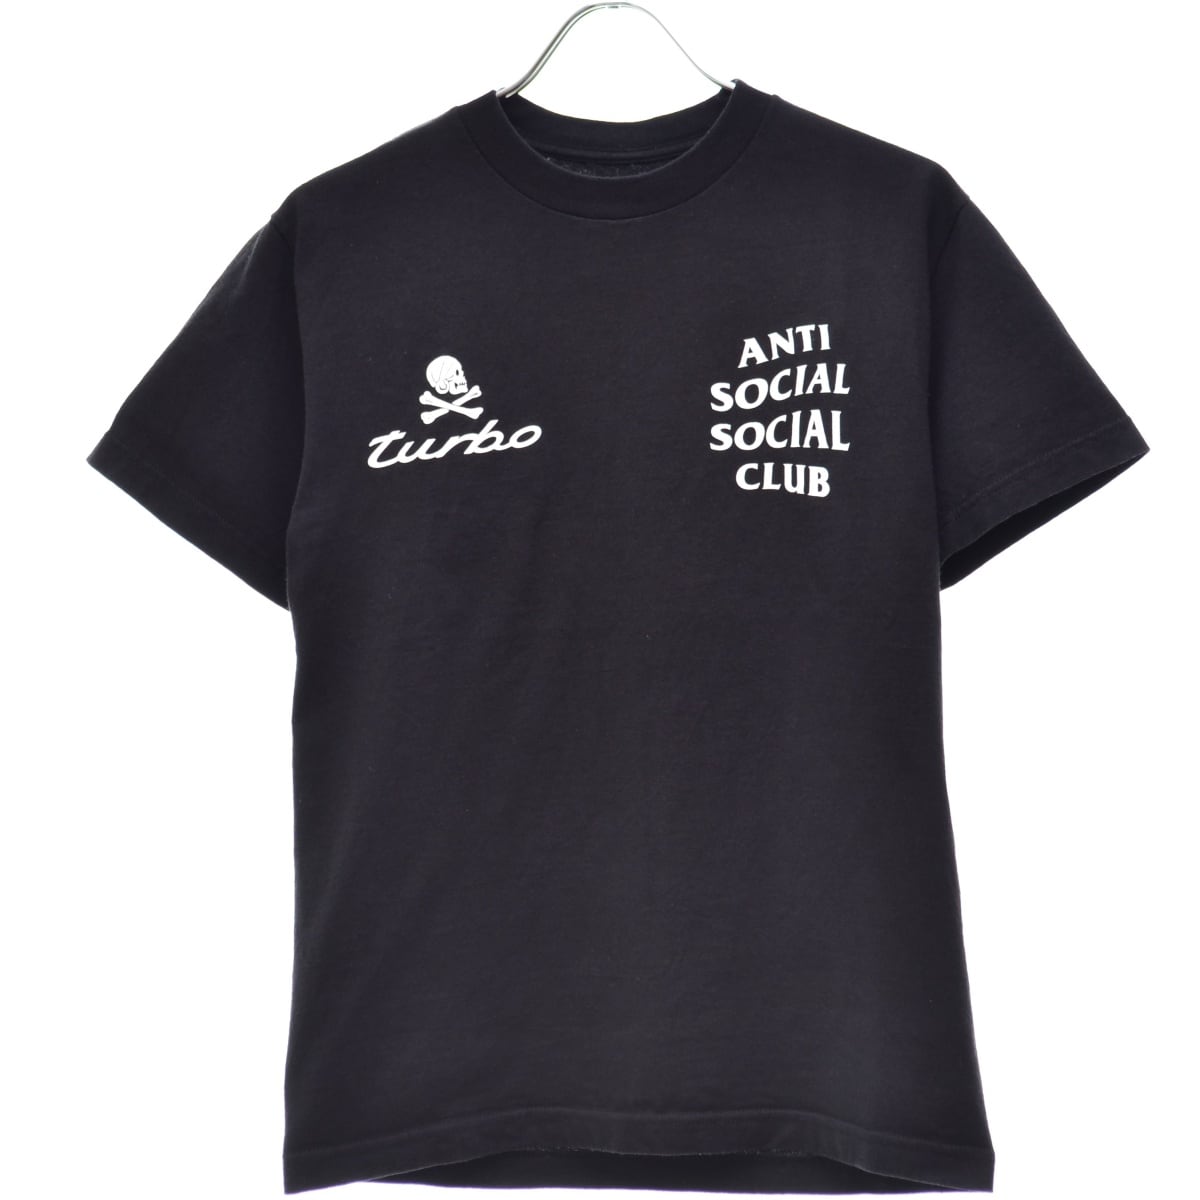 ANTI SOCIAL SOCIAL CLUB 長袖TシャツM69その他の出品物はコチラ